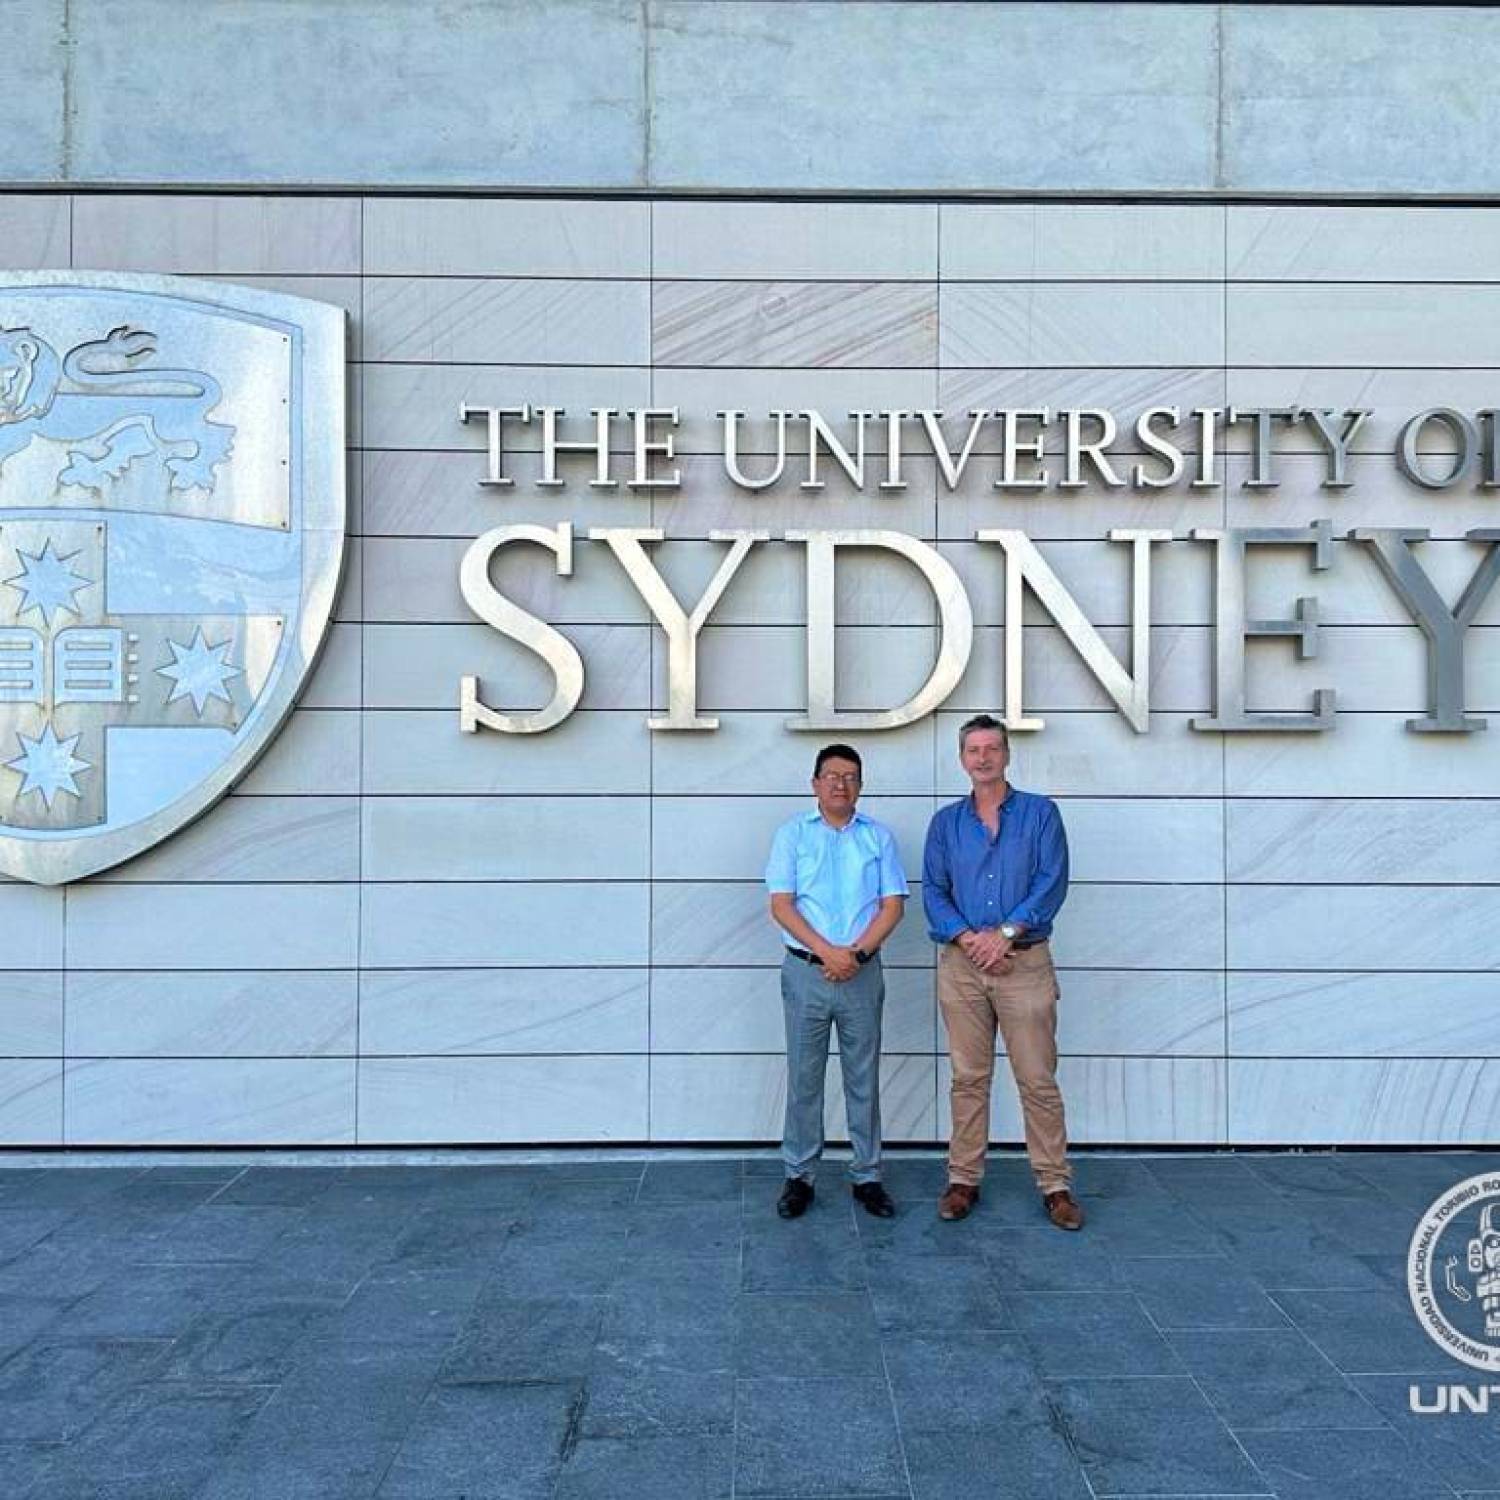 UNTRM y la University of Sydney impulsarán programas de investigación conjunta en mejoramiento genético animal y vegetal